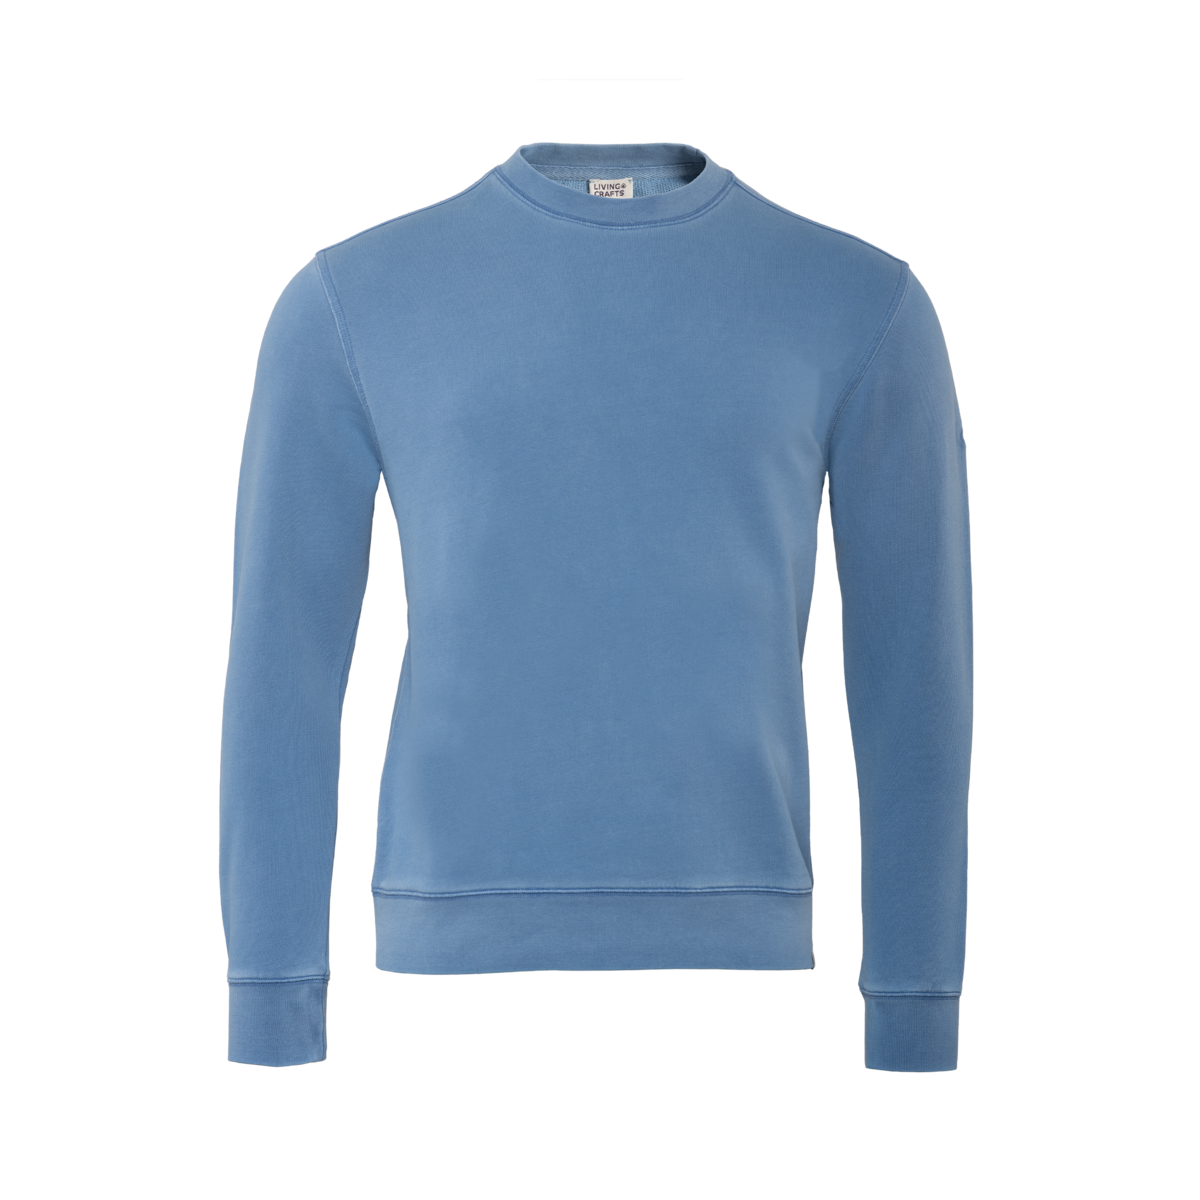 Blau Sweatshirt, RONNY